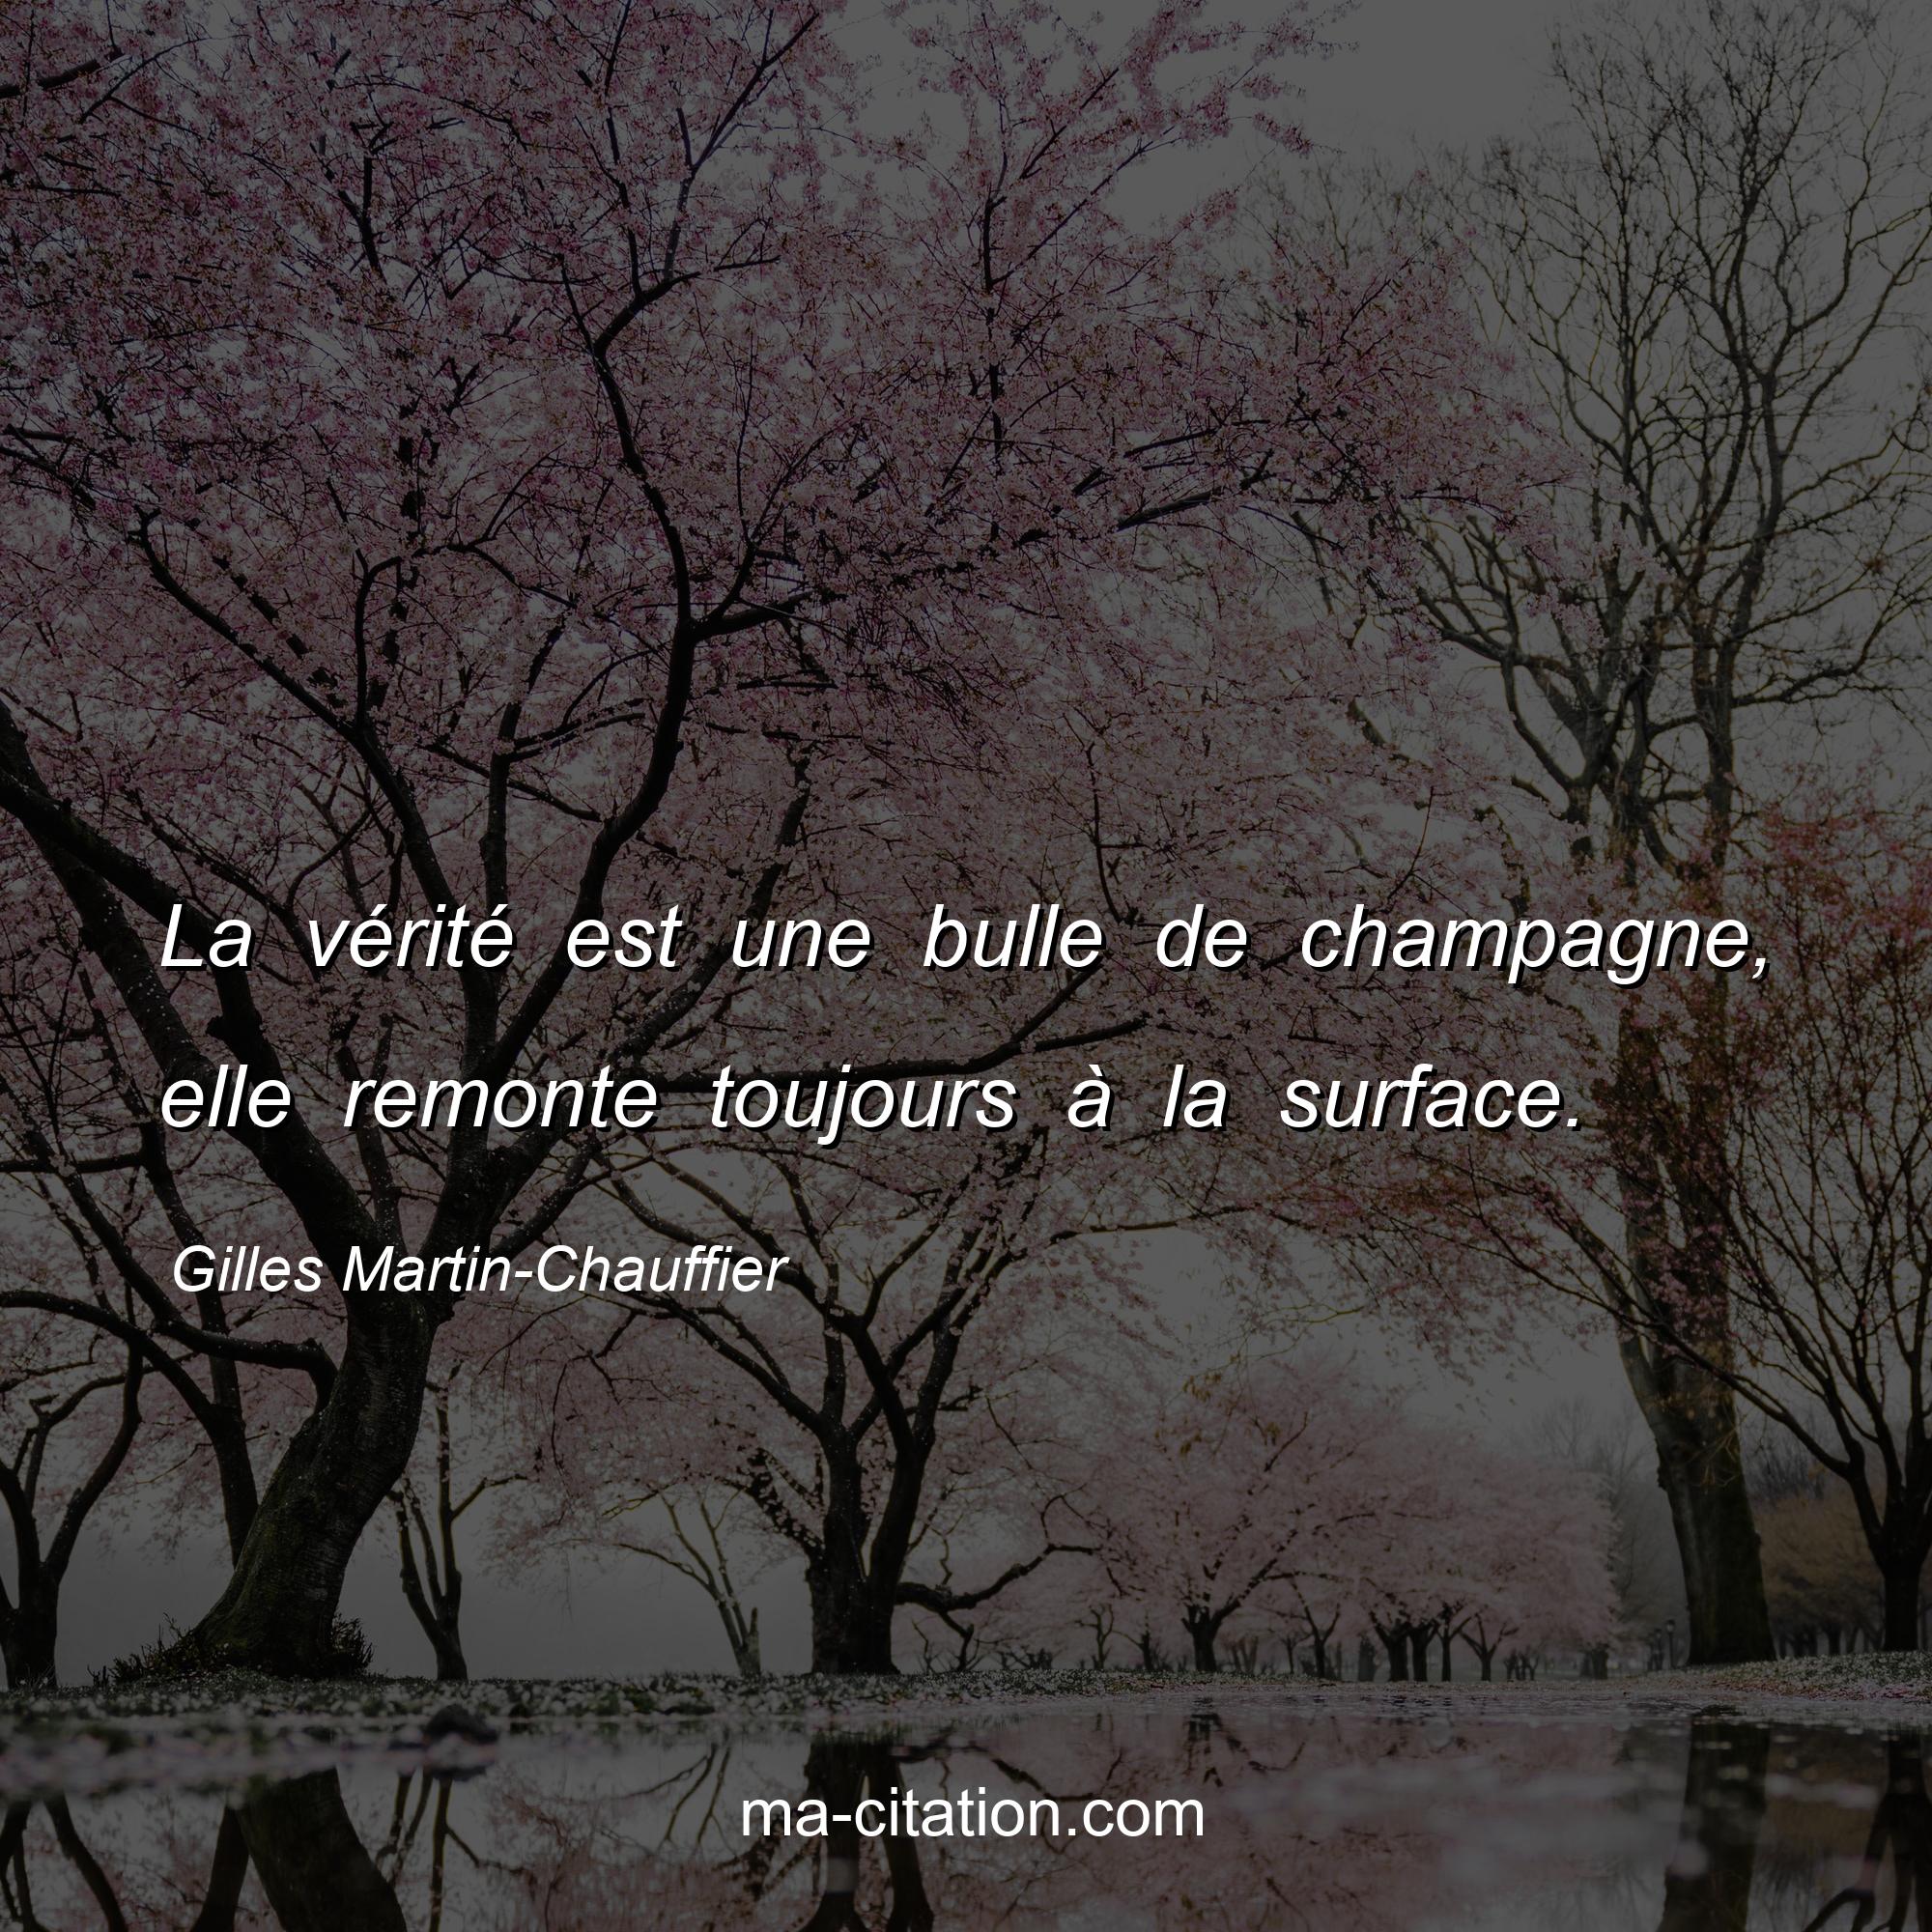 Gilles Martin-Chauffier : La vérité est une bulle de champagne, elle remonte toujours à la surface.